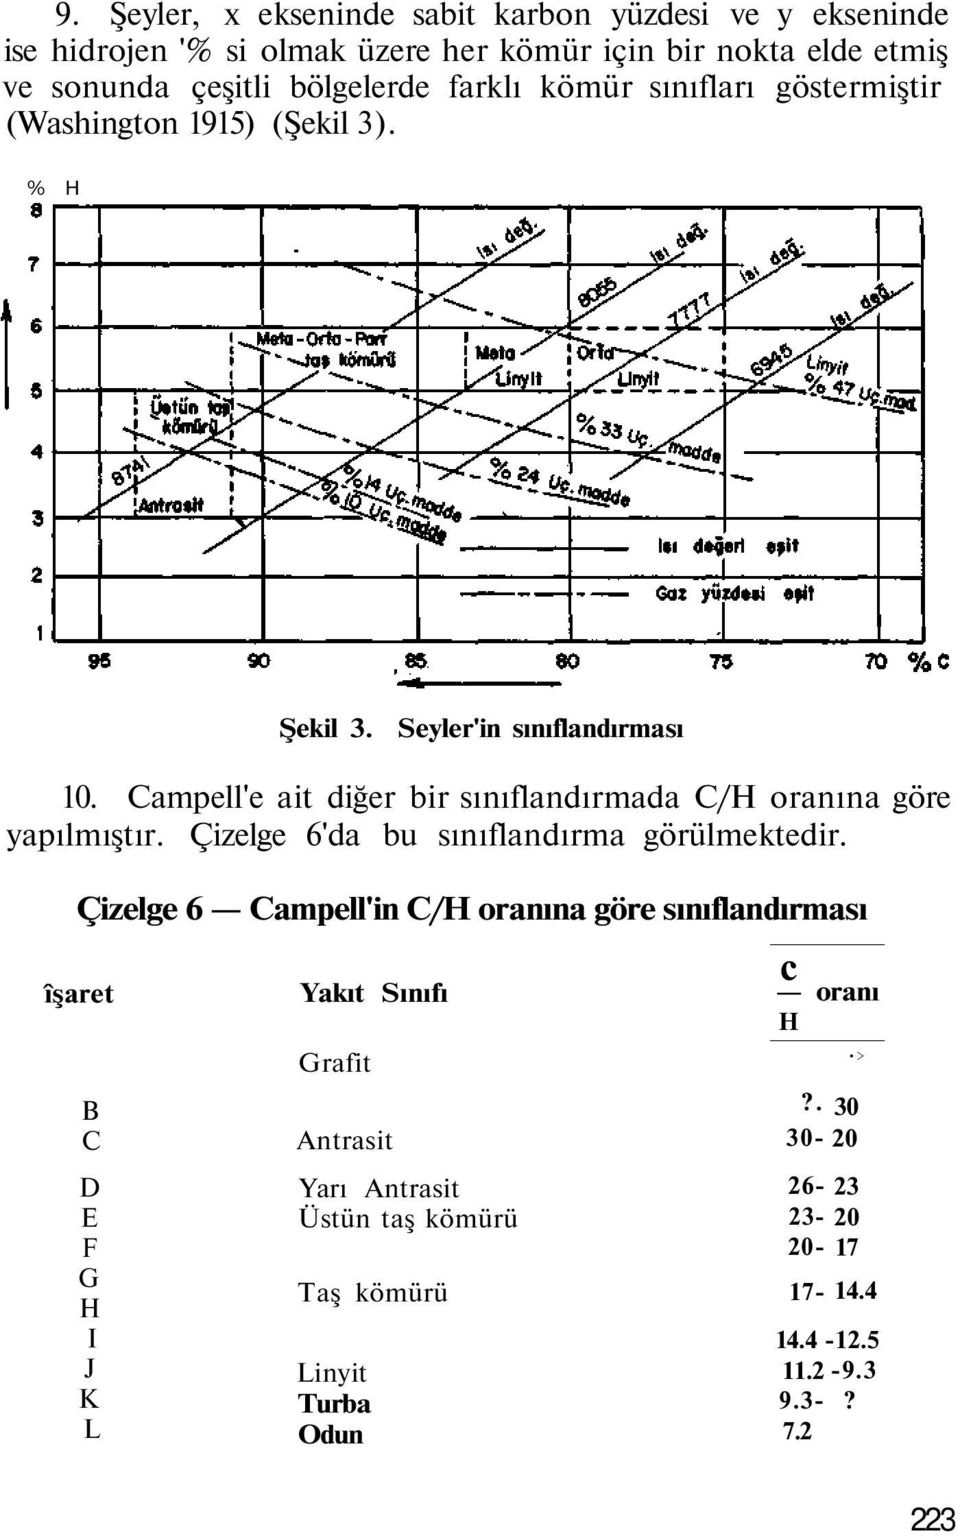 Campell'e ait diğer bir sınıflandırmada C/H oranına göre yapılmıştır. Çizelge 6'da bu sınıflandırma görülmektedir.